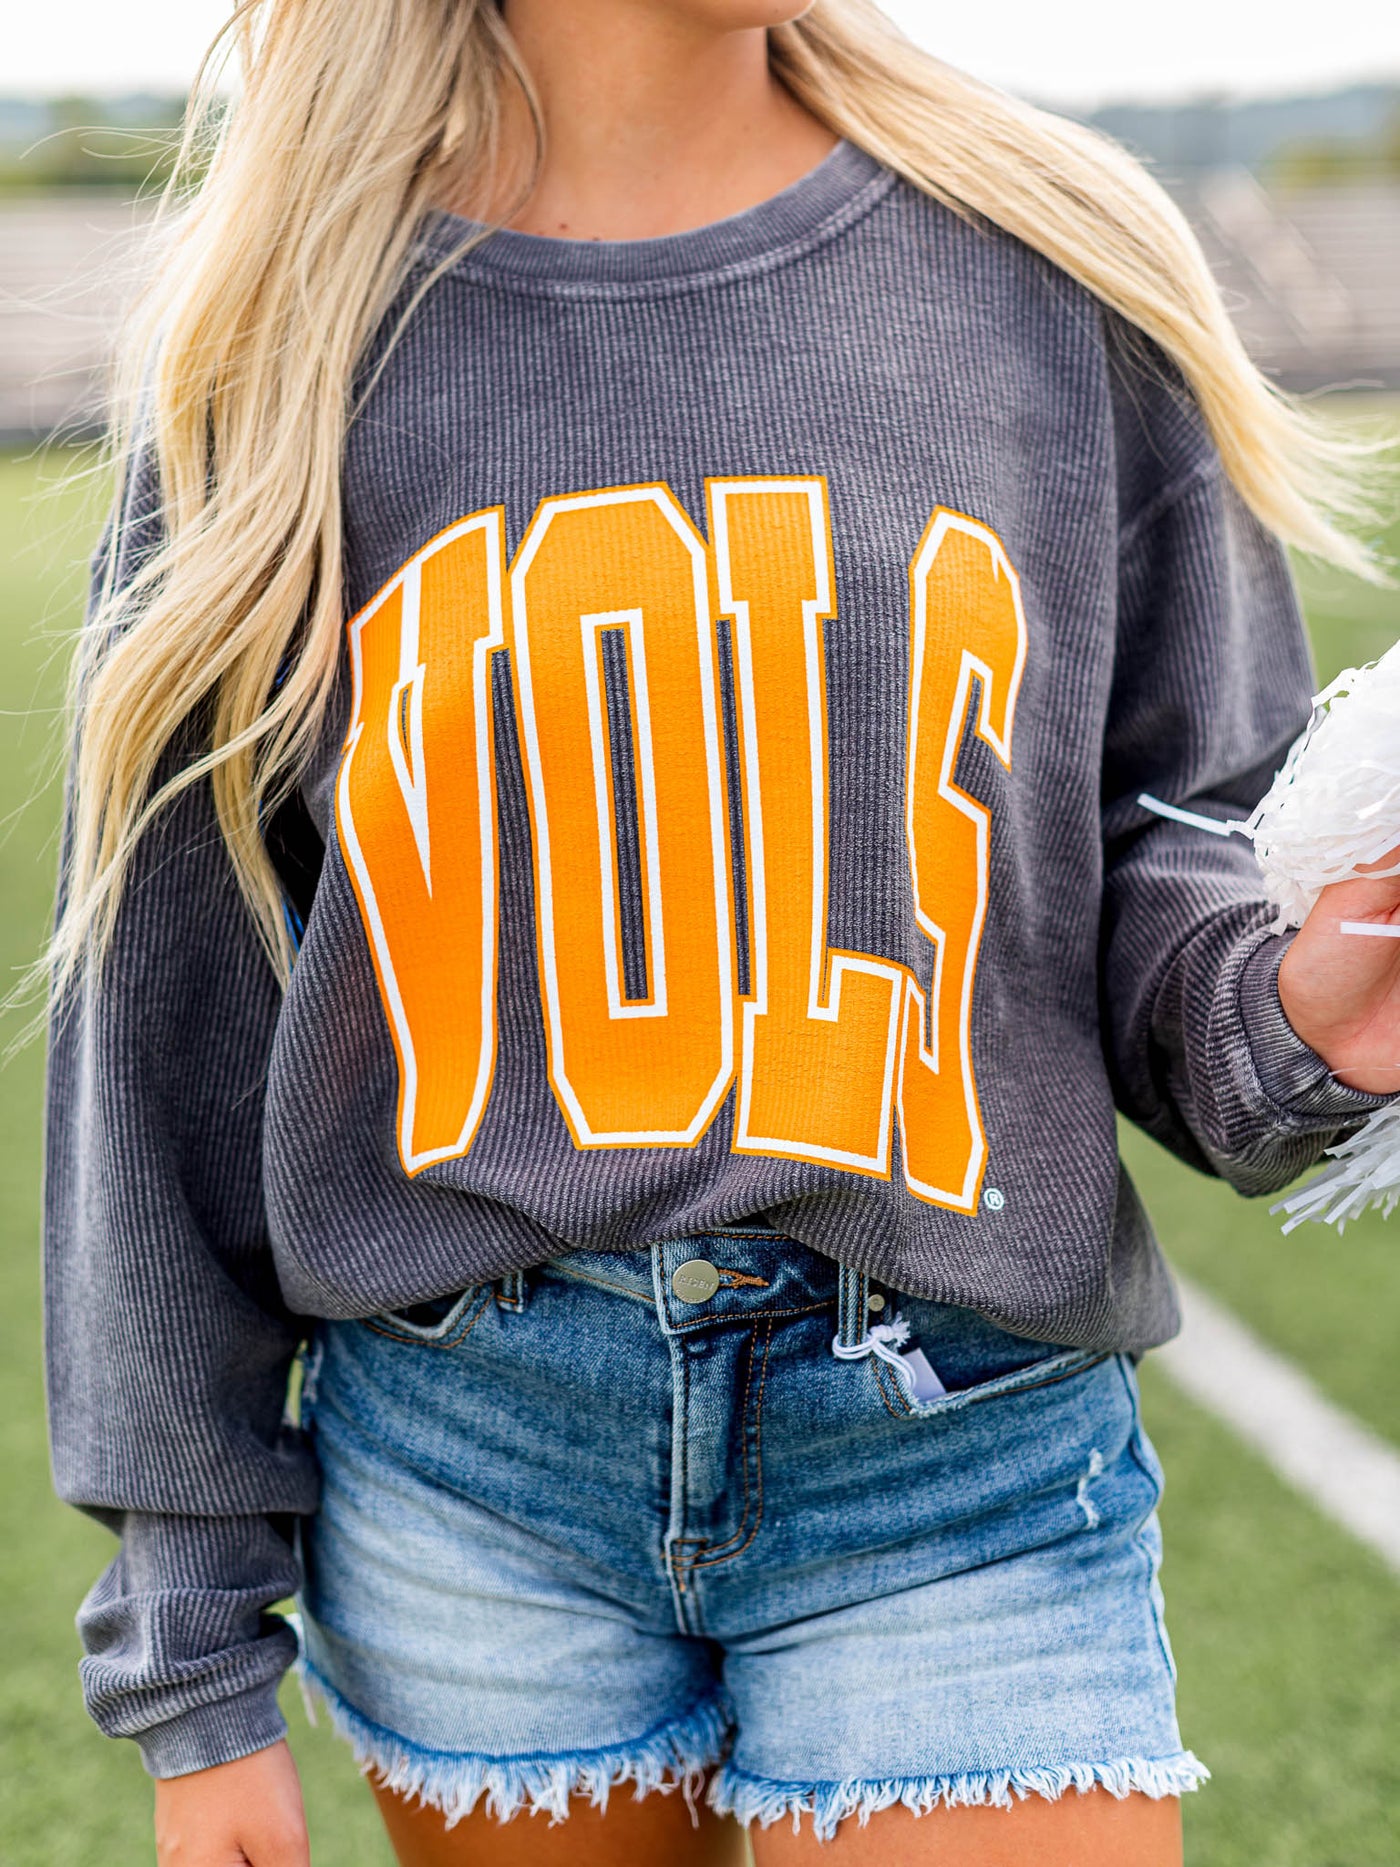 Vols Collegiate Cord Sweatshirt